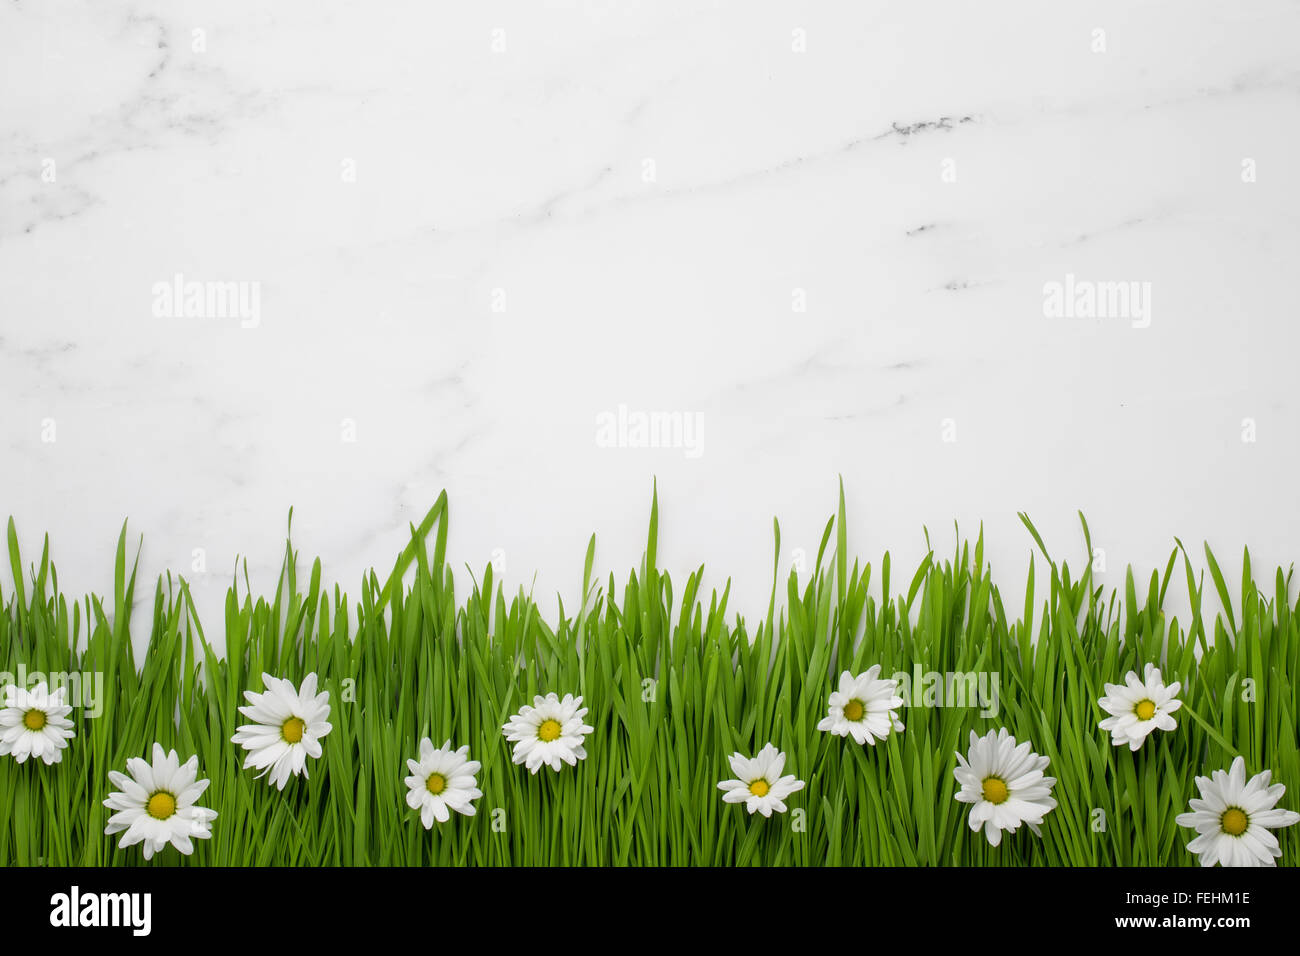 Daisy bianca fiori in erba verde su sfondo marmo Foto Stock